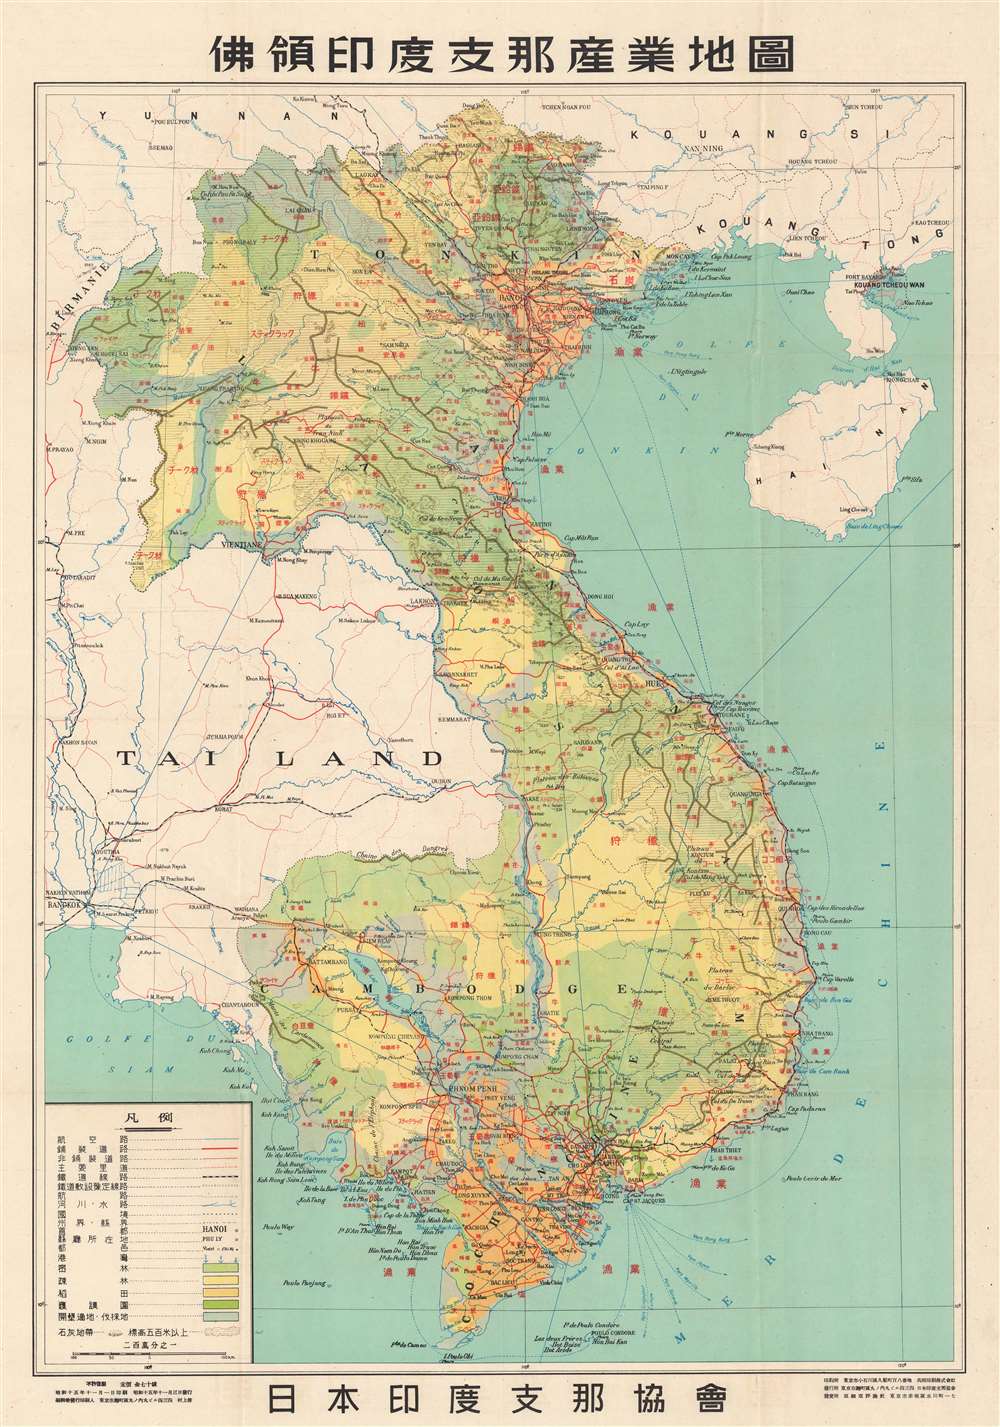 俳領印度支那産業地園. / Indochina Industrial Land.: Geographicus Rare Antique Maps